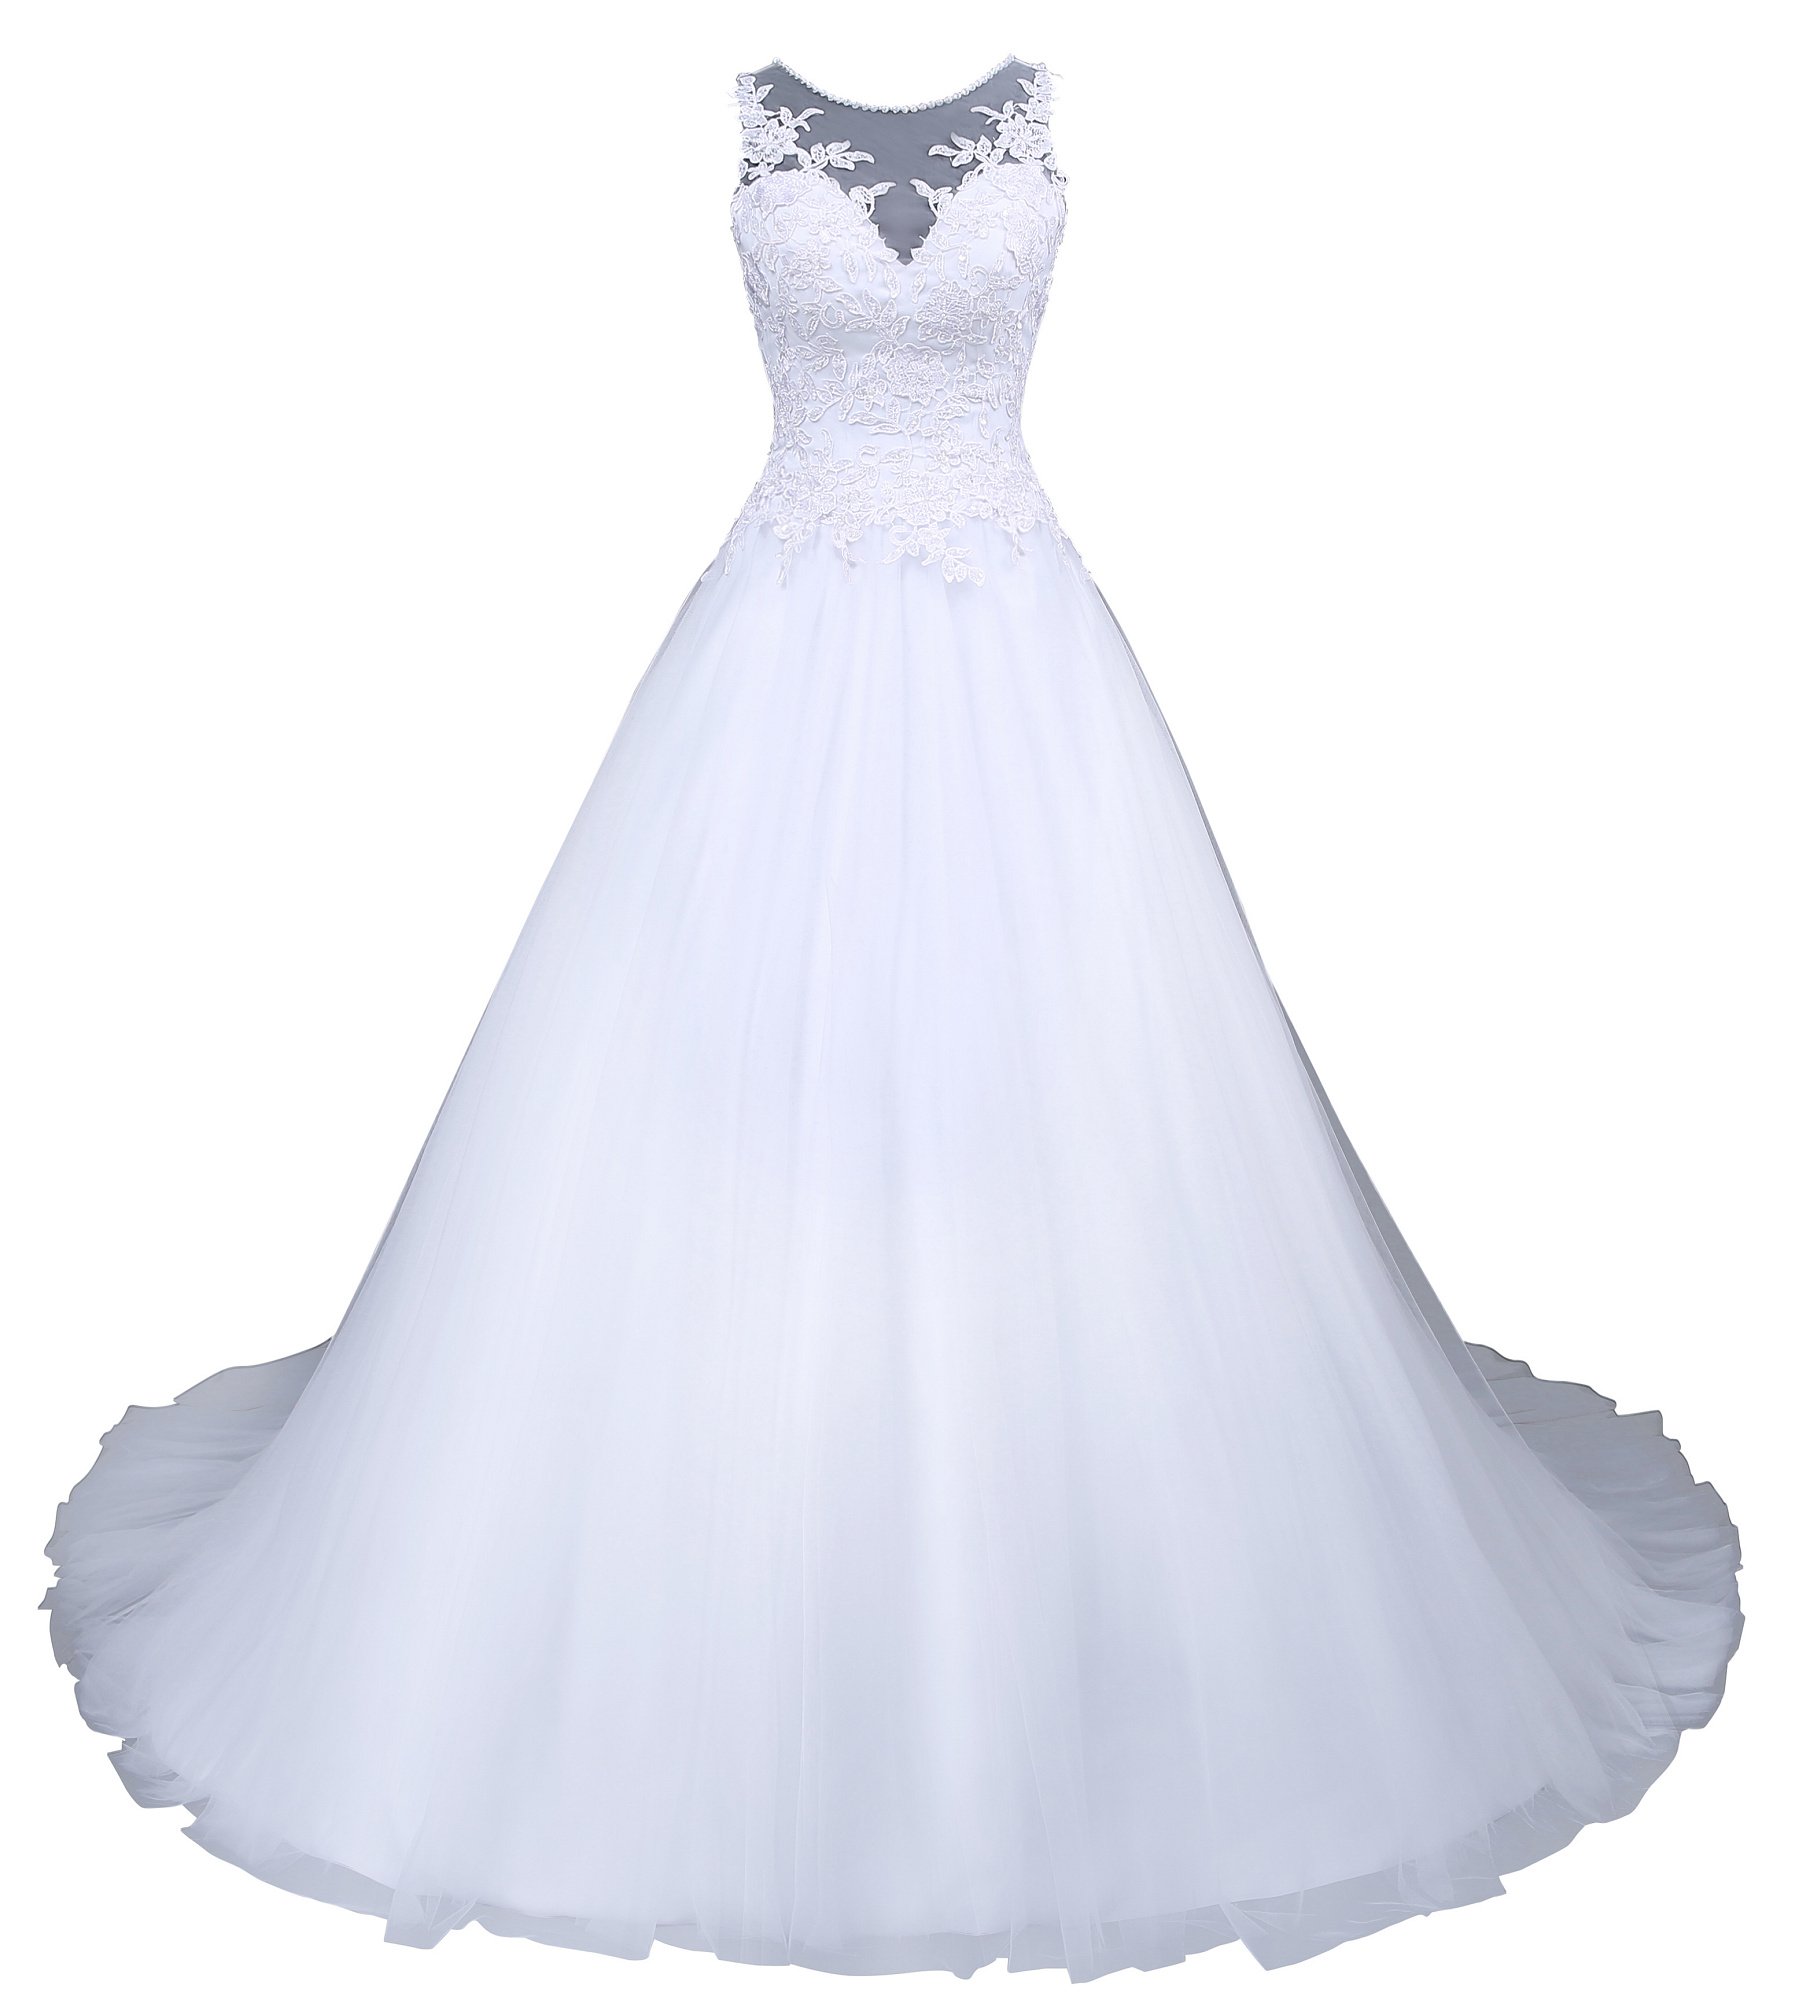 Romantic-Fashion Brautkleid Hochzeitskleid Weiß Modell W045 A-Linie Satin Stickerei Perlen Pailetten DE Größe 50